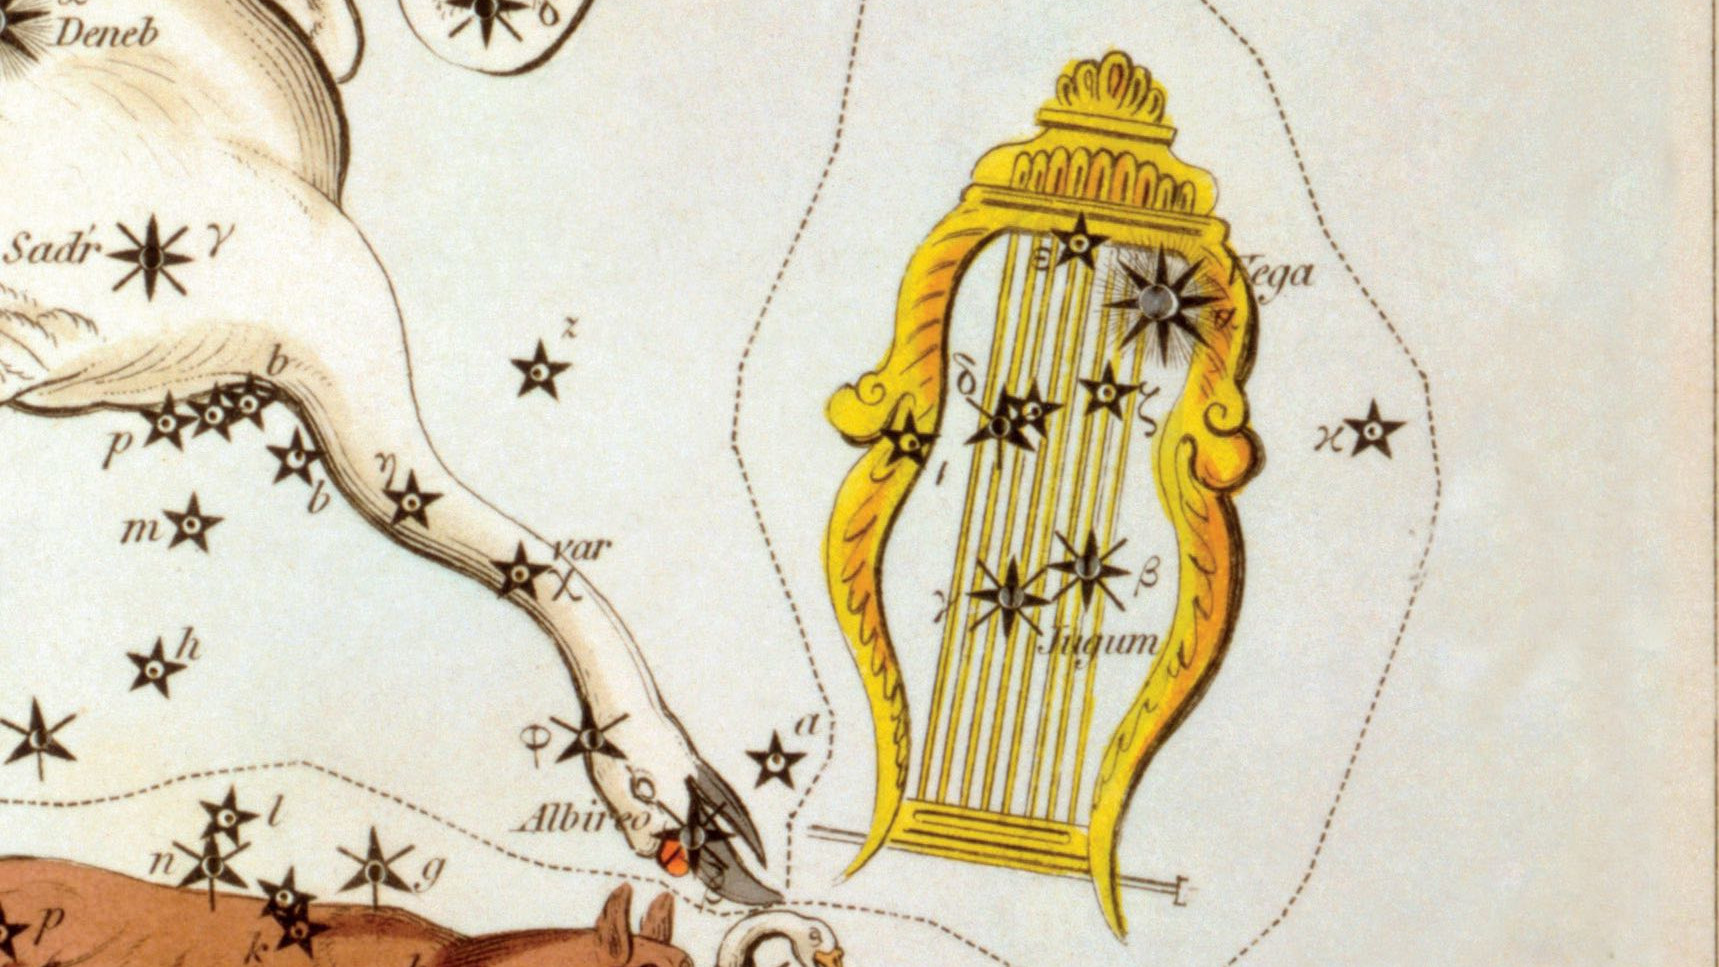 Uma antiga representação da constelação Lyra com a sua estrela principal Vega, um dos vértices do Triângulo de Verão.